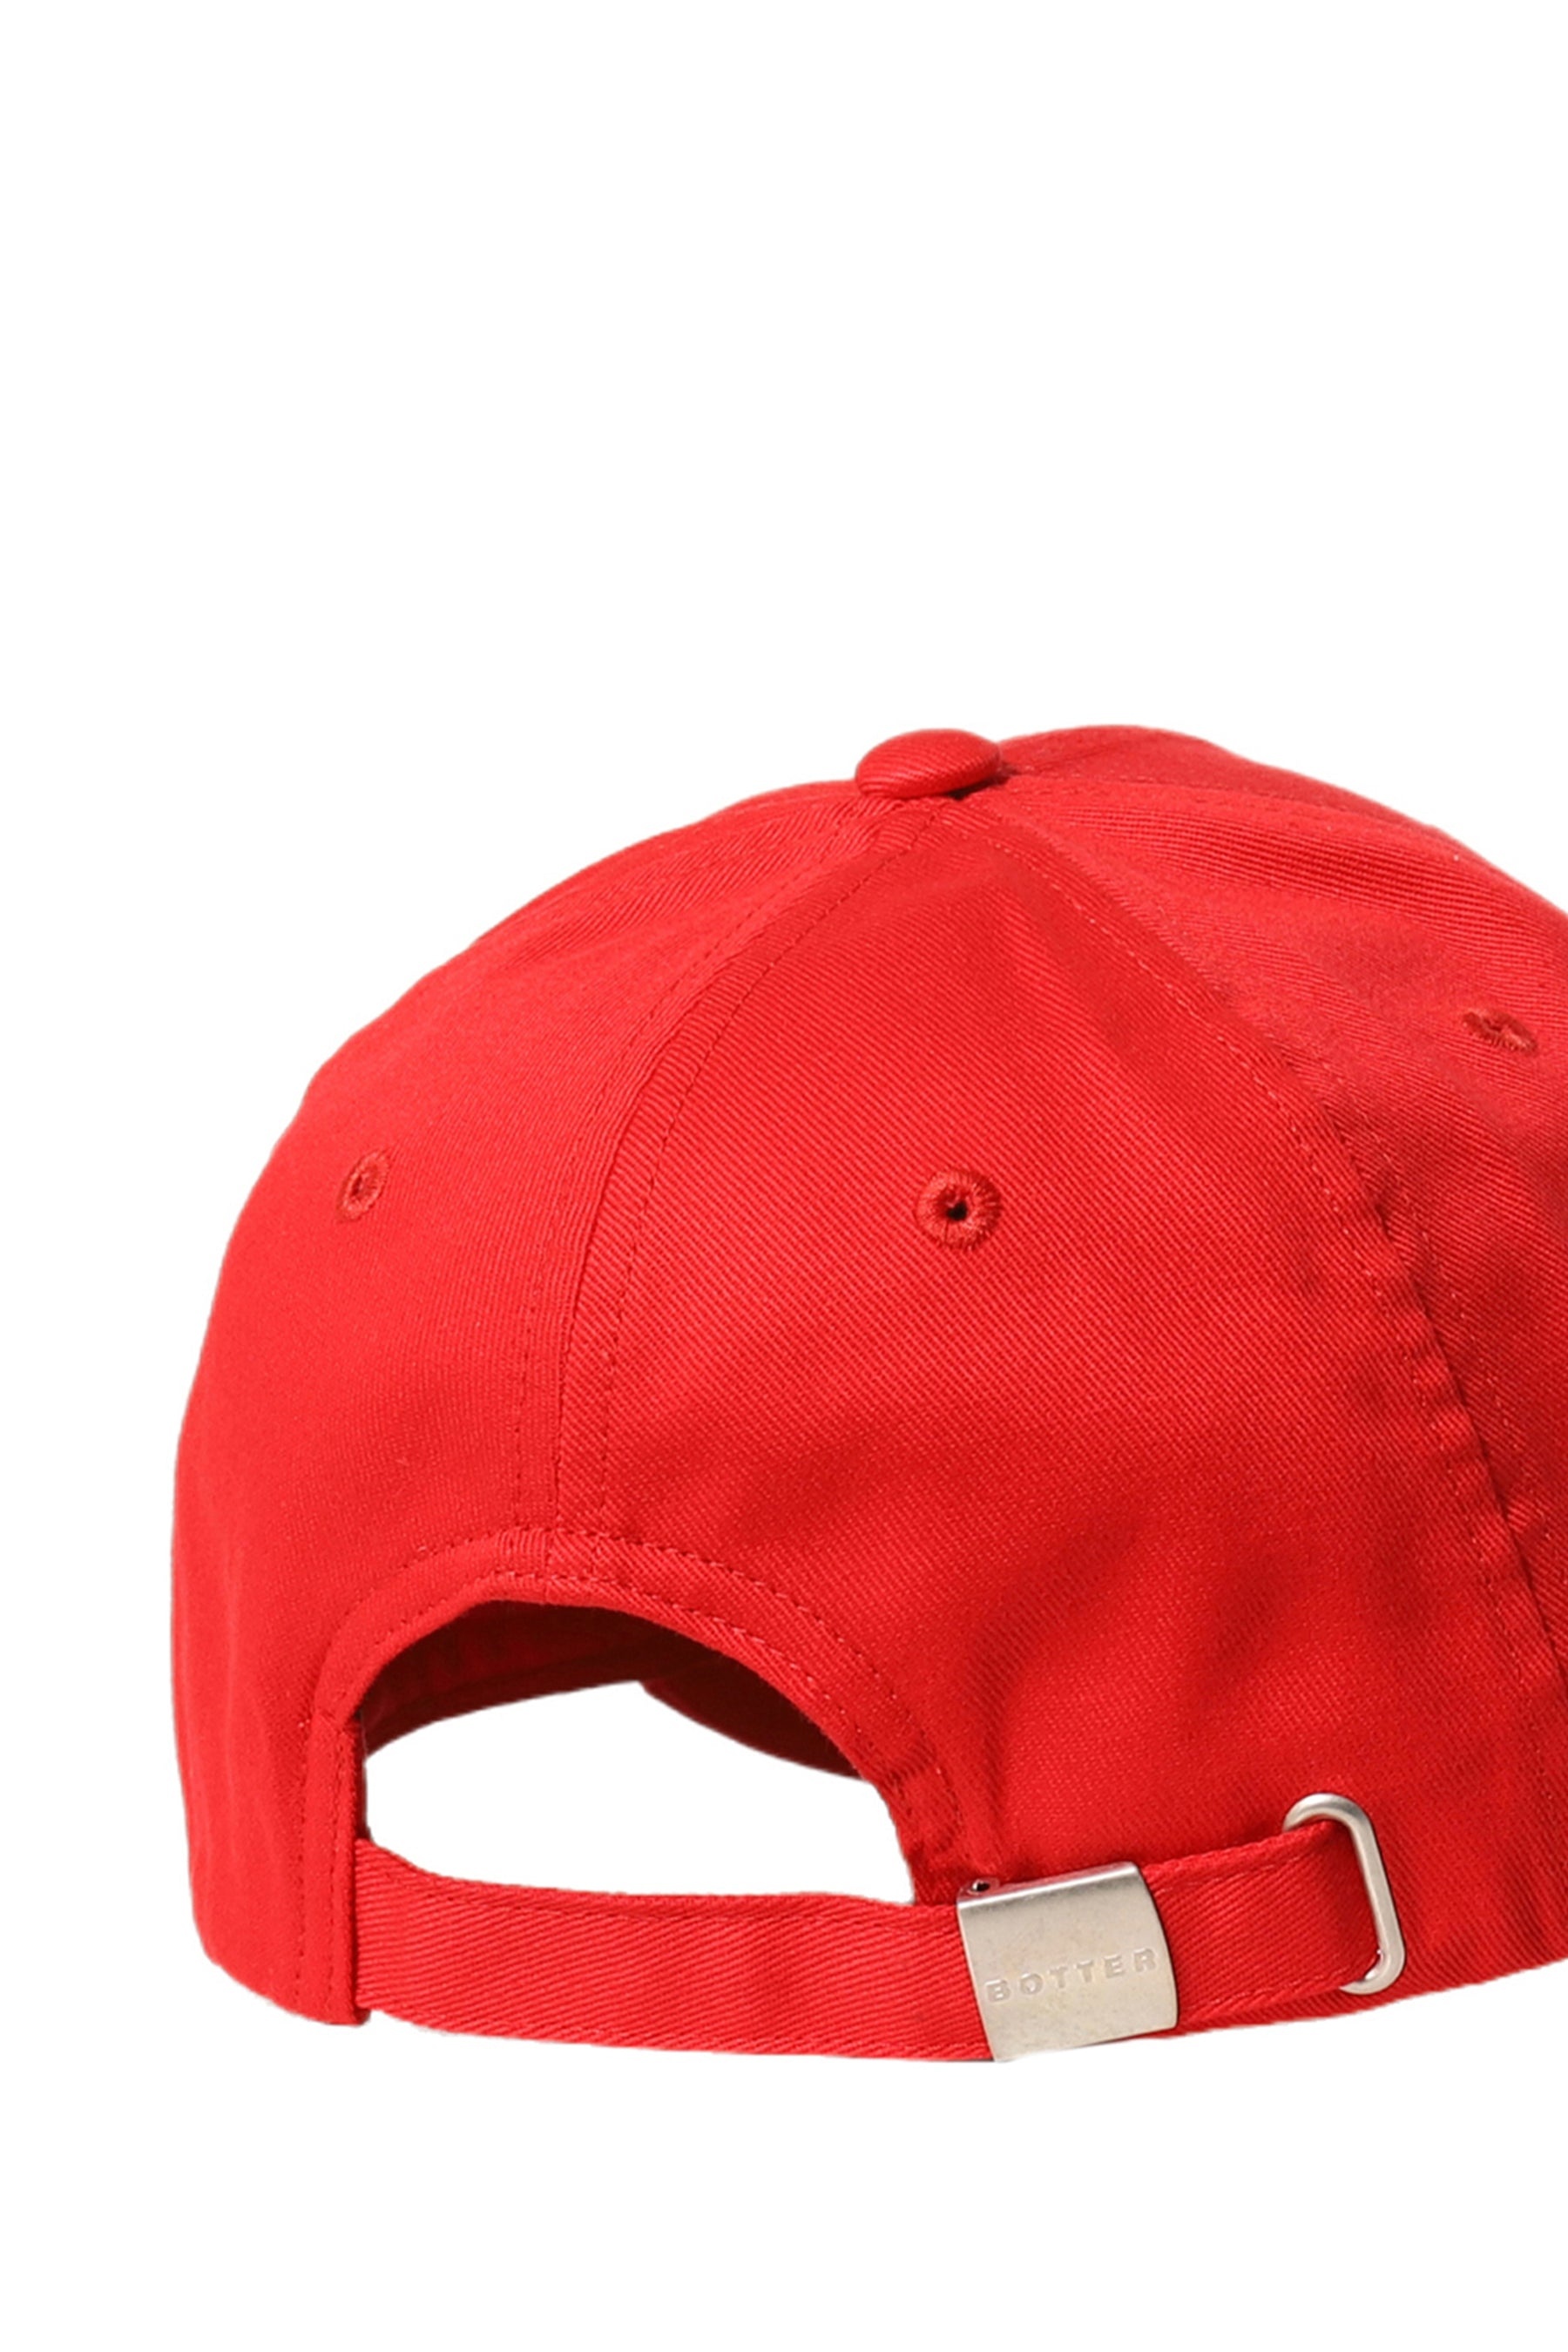 CLASSIC CAP / RED - 4